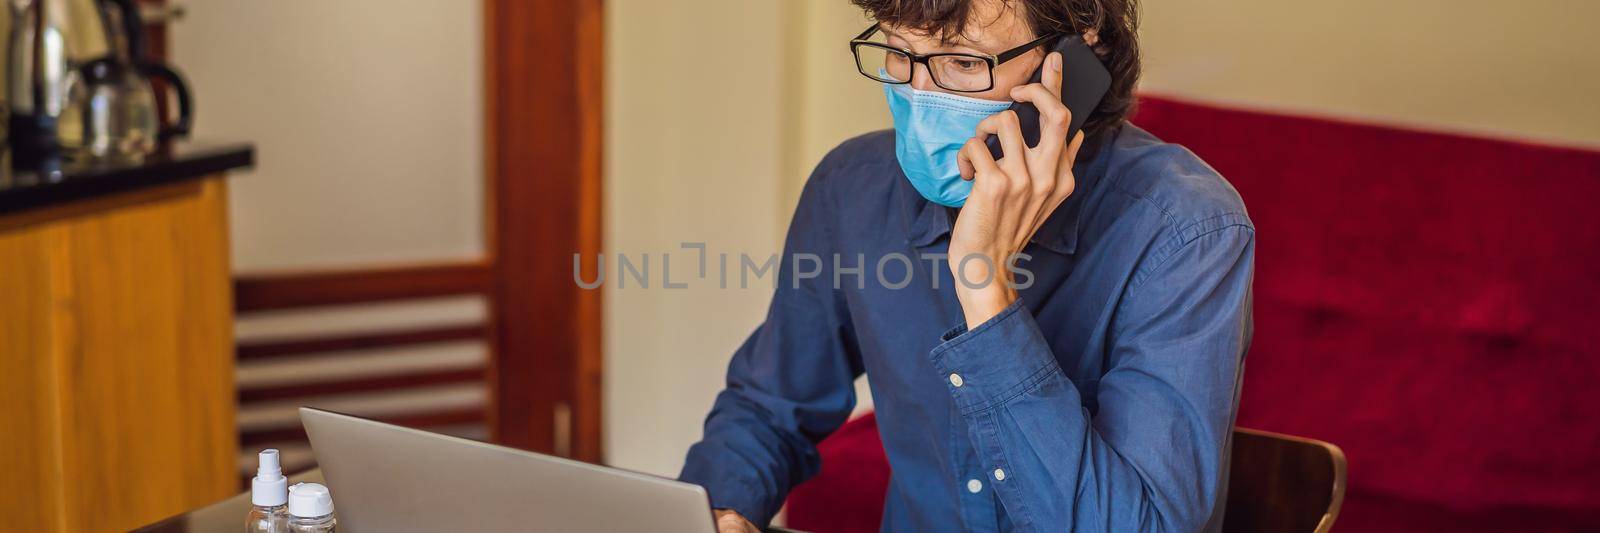 Coronavirus. Man working from home wearing protective mask. quarantine for coronavirus wearing protective mask. Working from home. BANNER, LONG FORMAT